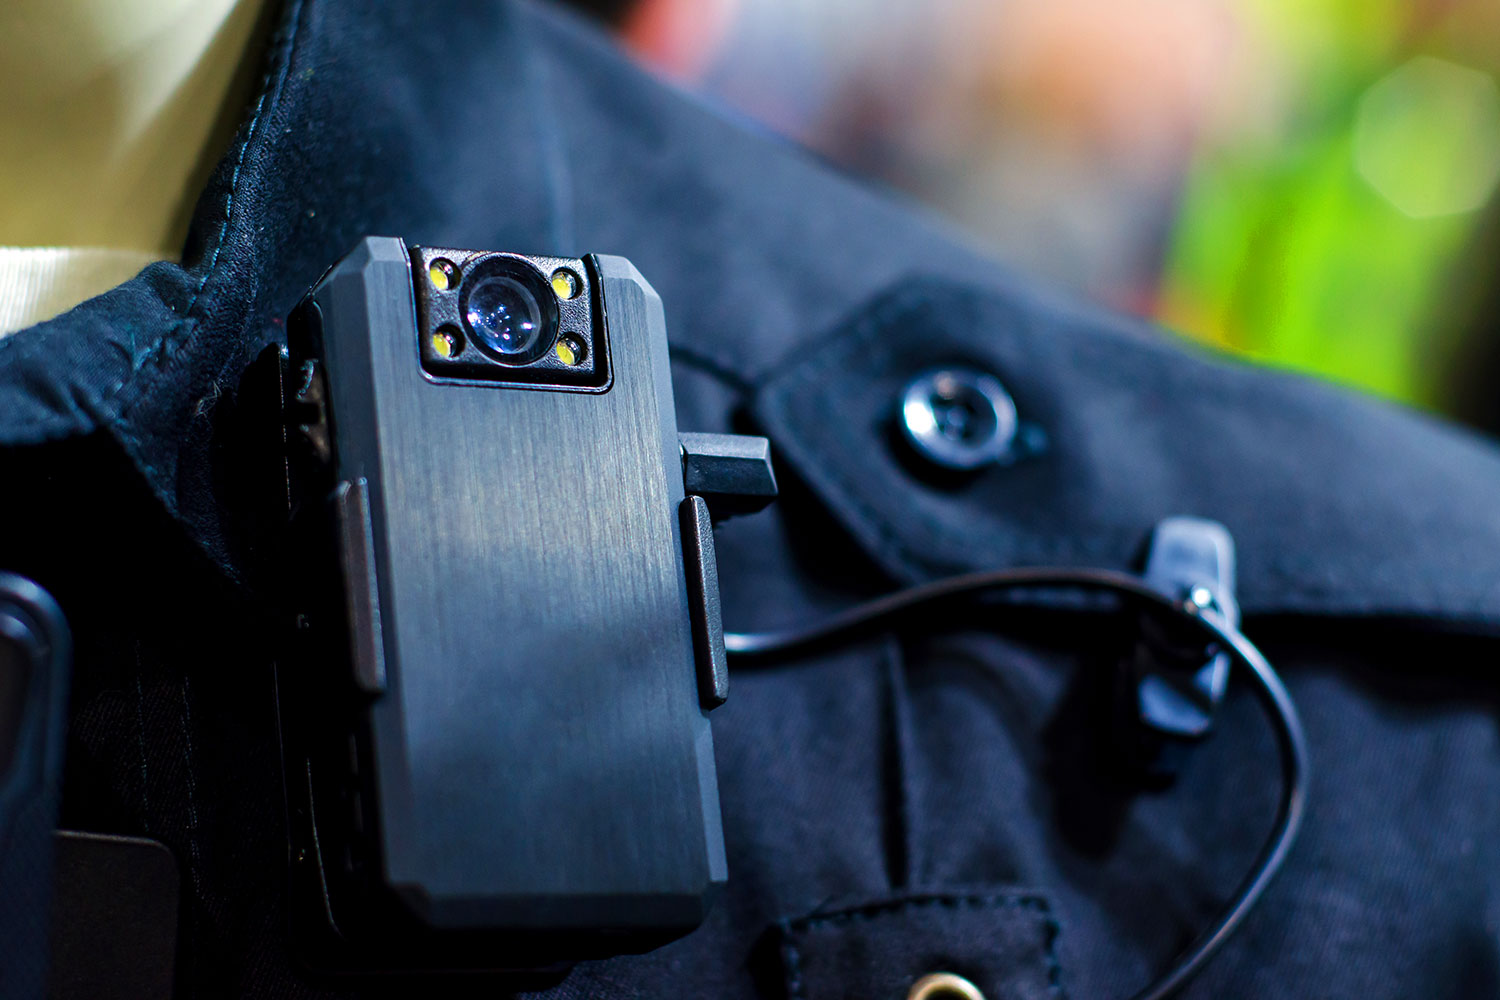 cámara corporal en un uniforme de seguridad